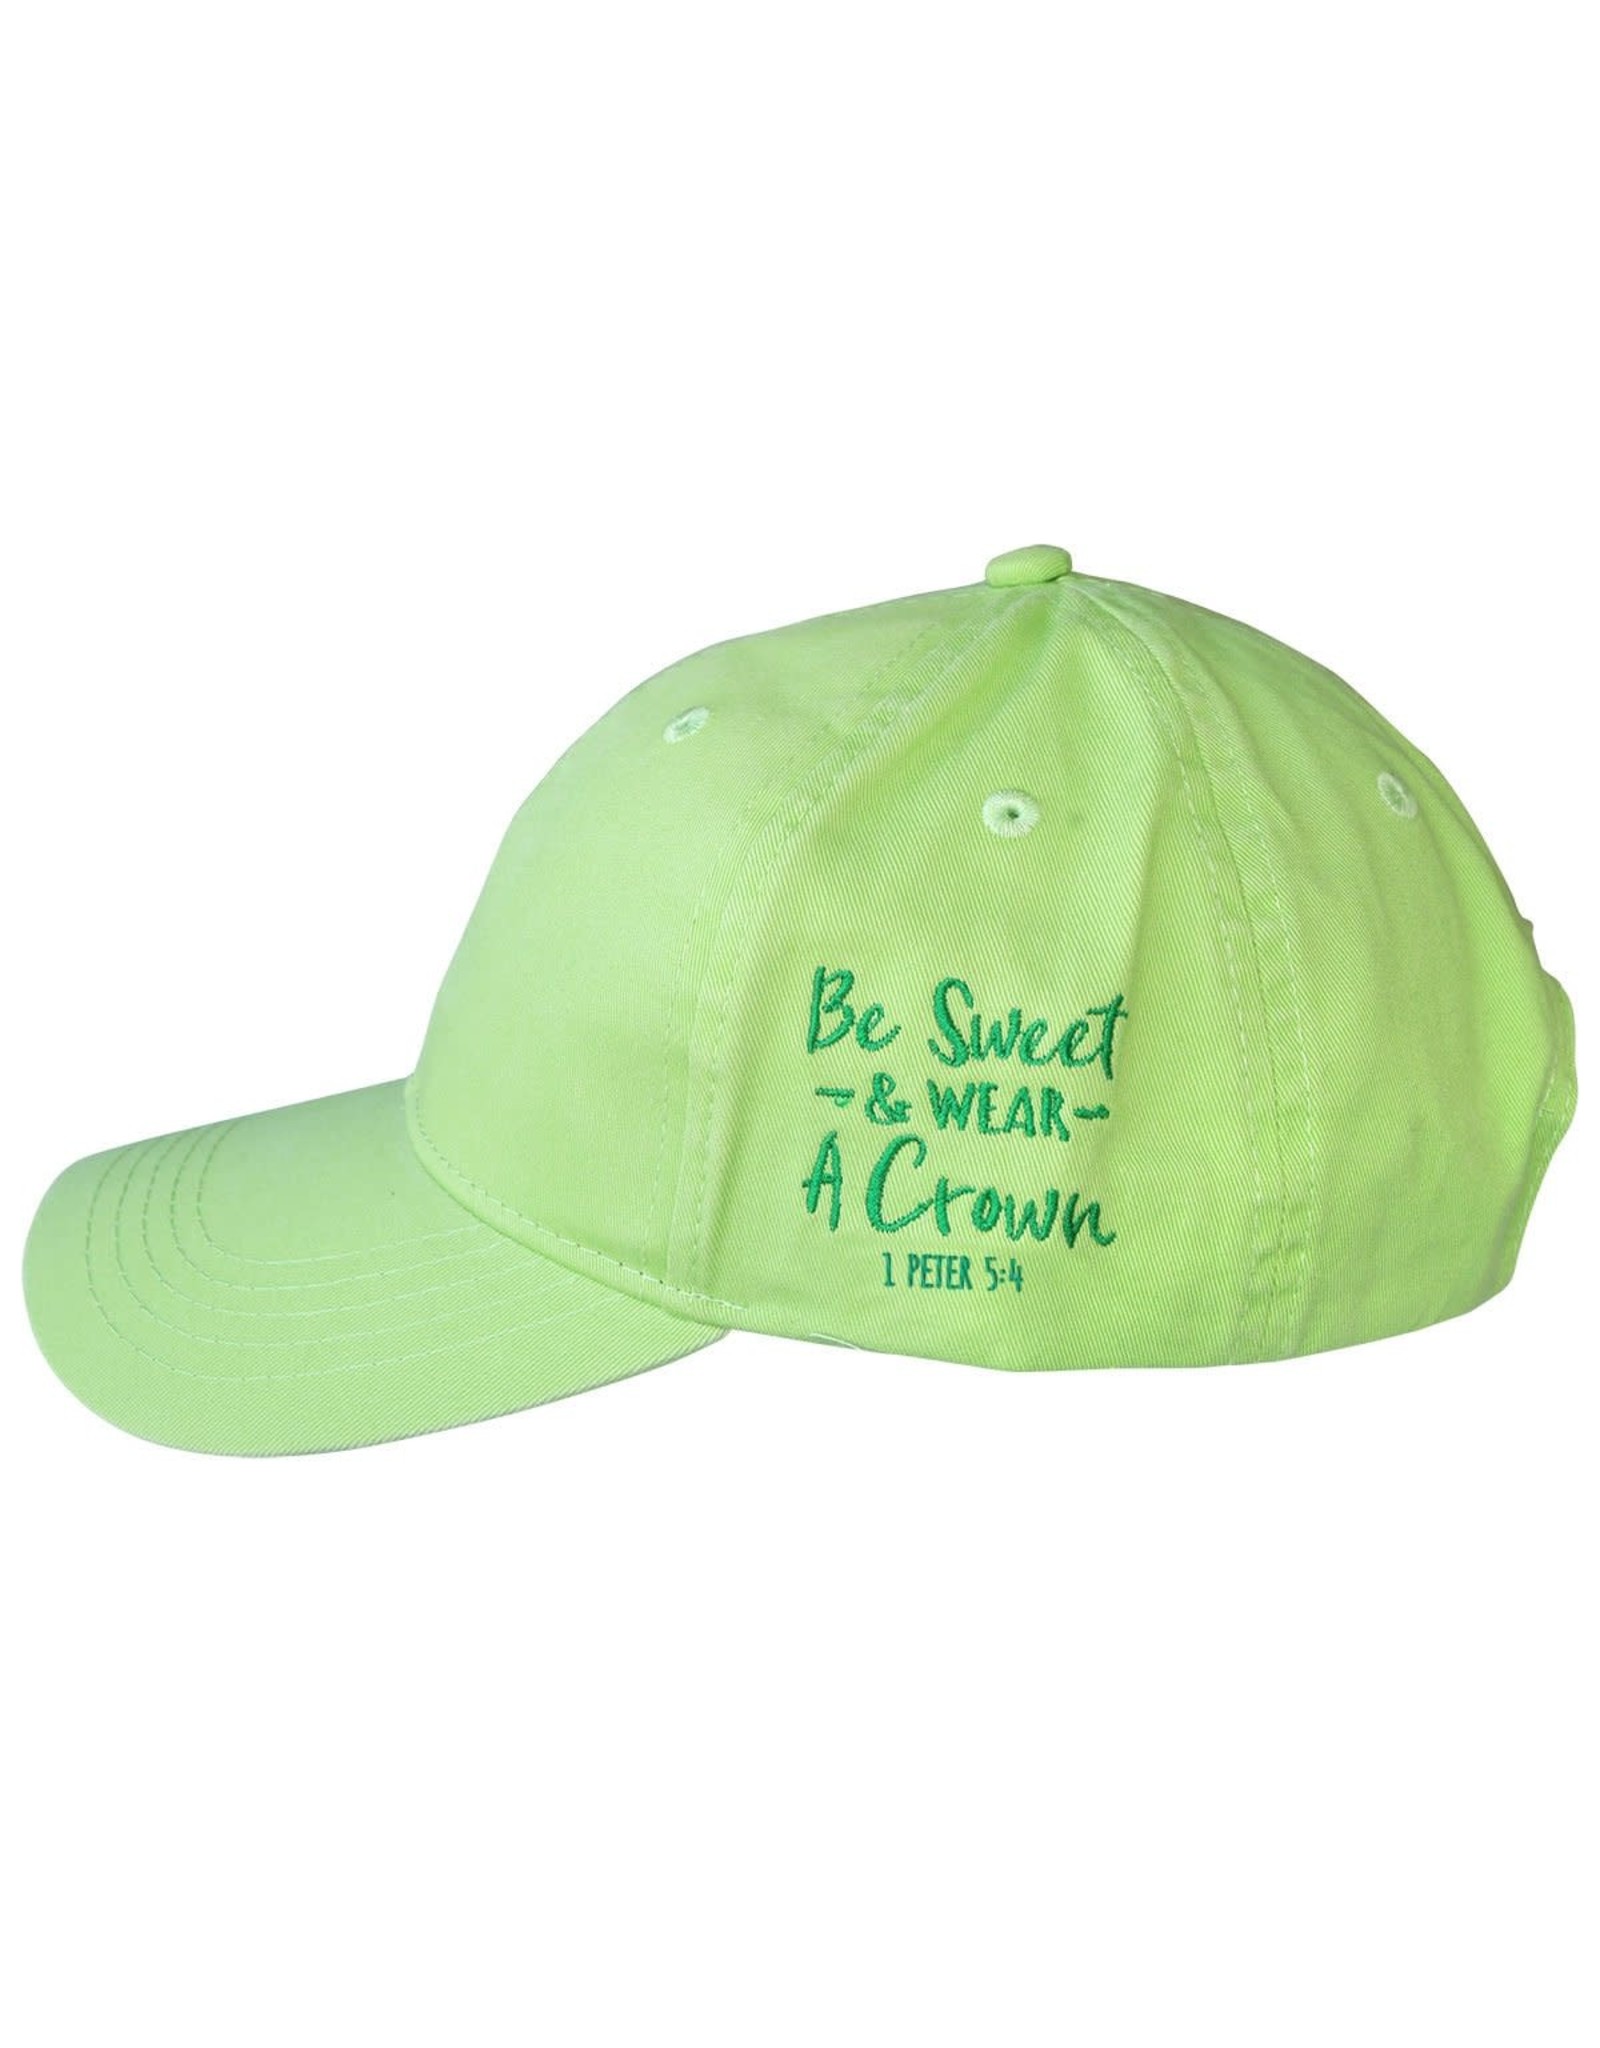 Grace & Truth Hat - Be Sweet & Wear a Crown (1 Peter 5:4)